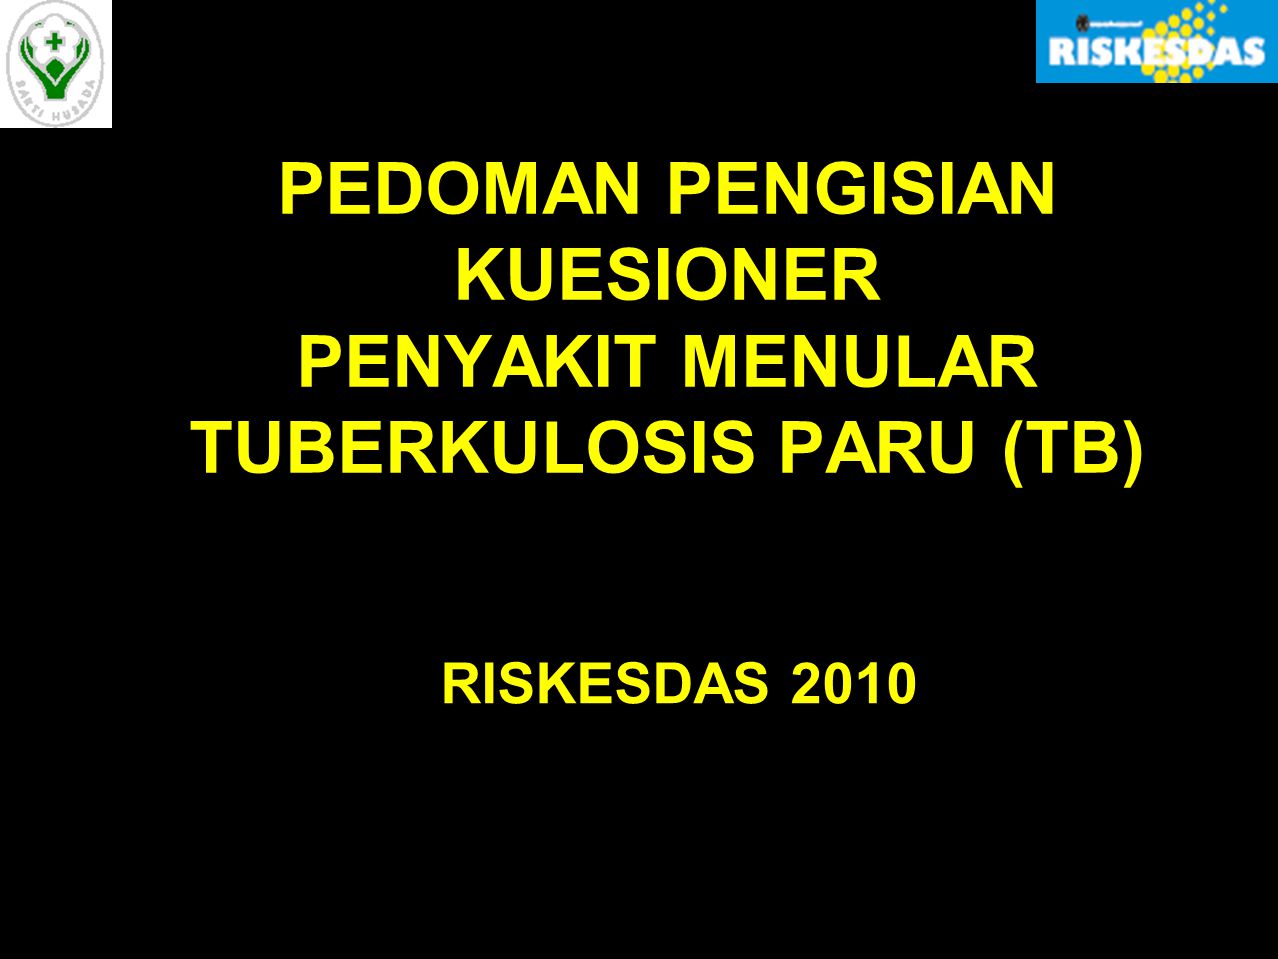 PEDOMAN PENGISIAN KUESIONER PENYAKIT MENULAR TUBERKULOSIS PARU (TB)